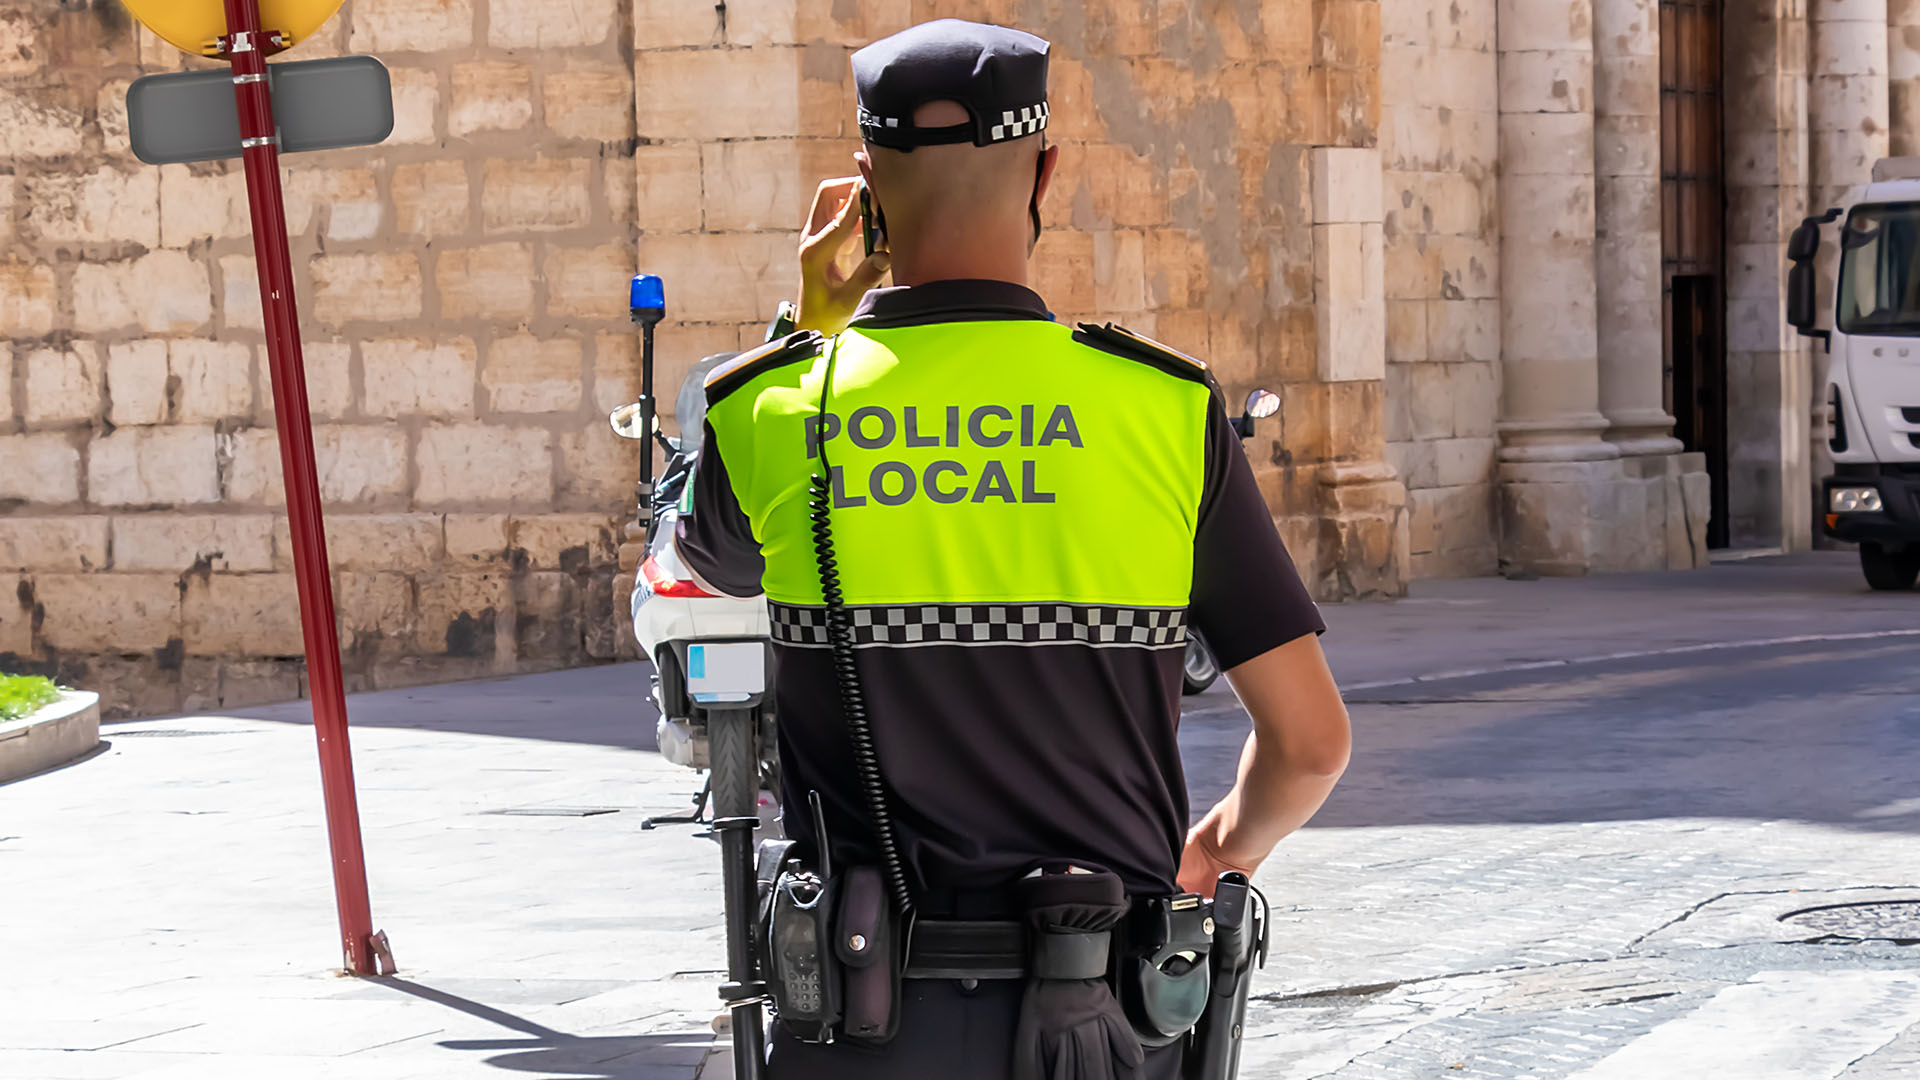 La Policía de Siero, en Asturias, halló a una argentina que estaba desaparecida desde hacía 25 años (Shutterstock)